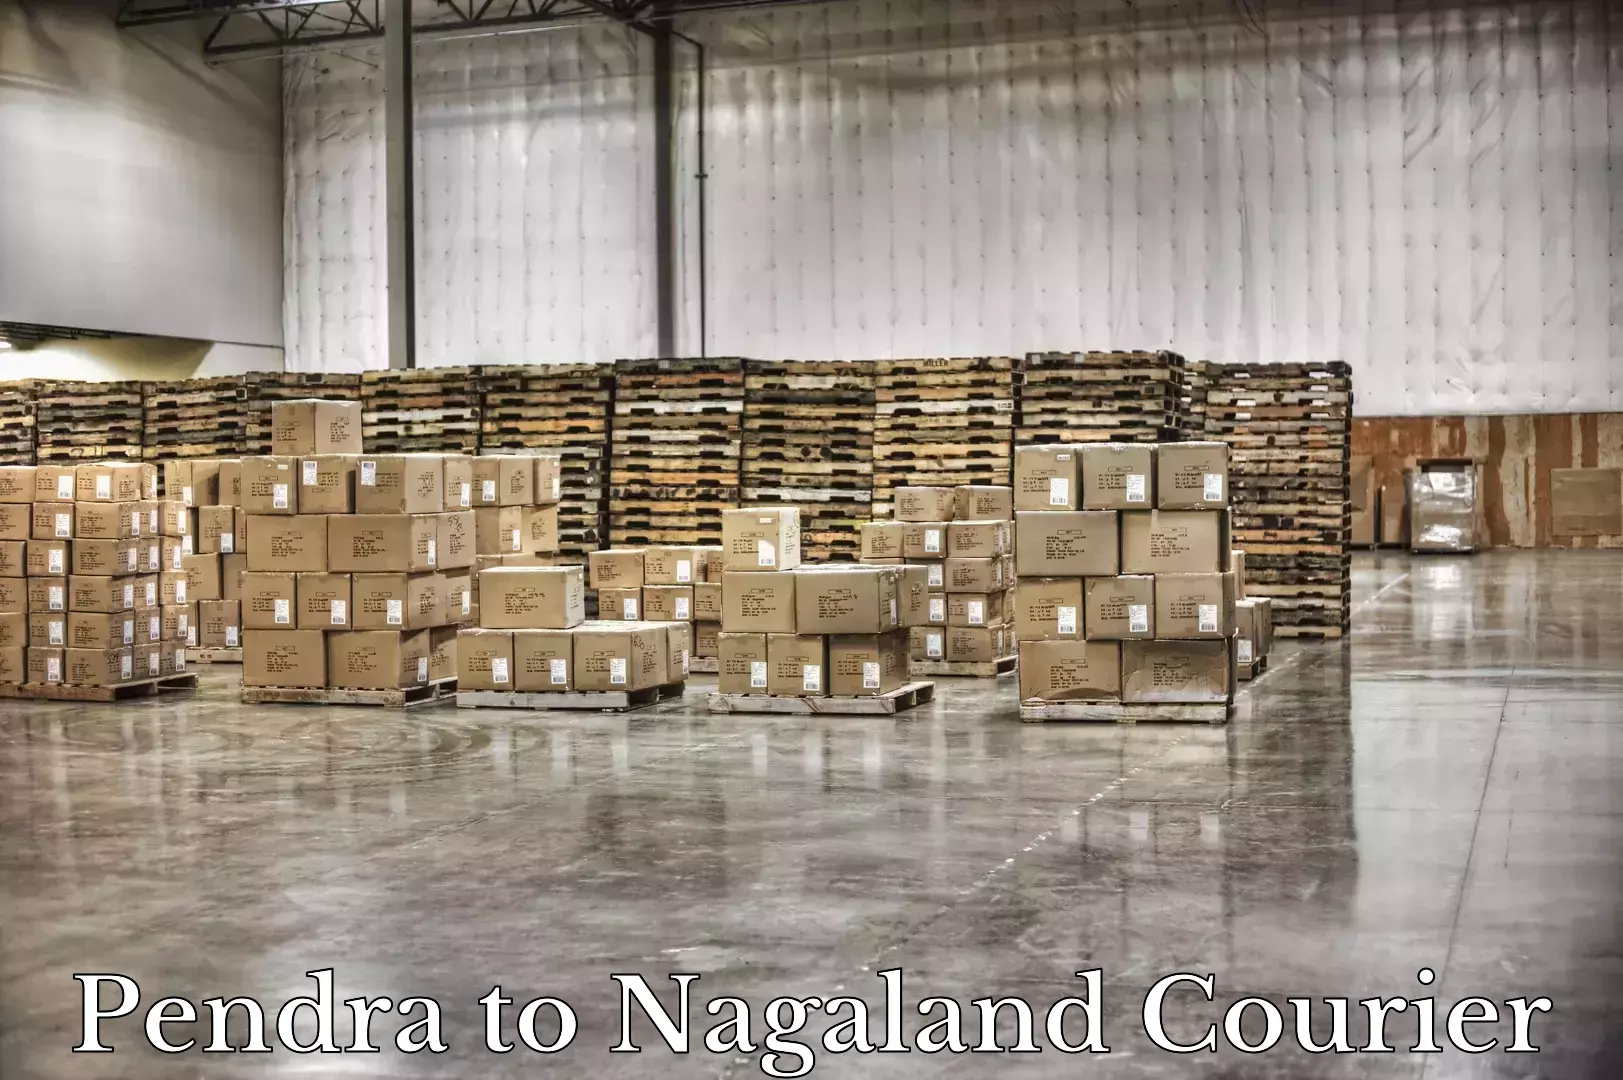 Door-to-door baggage service Pendra to Nagaland